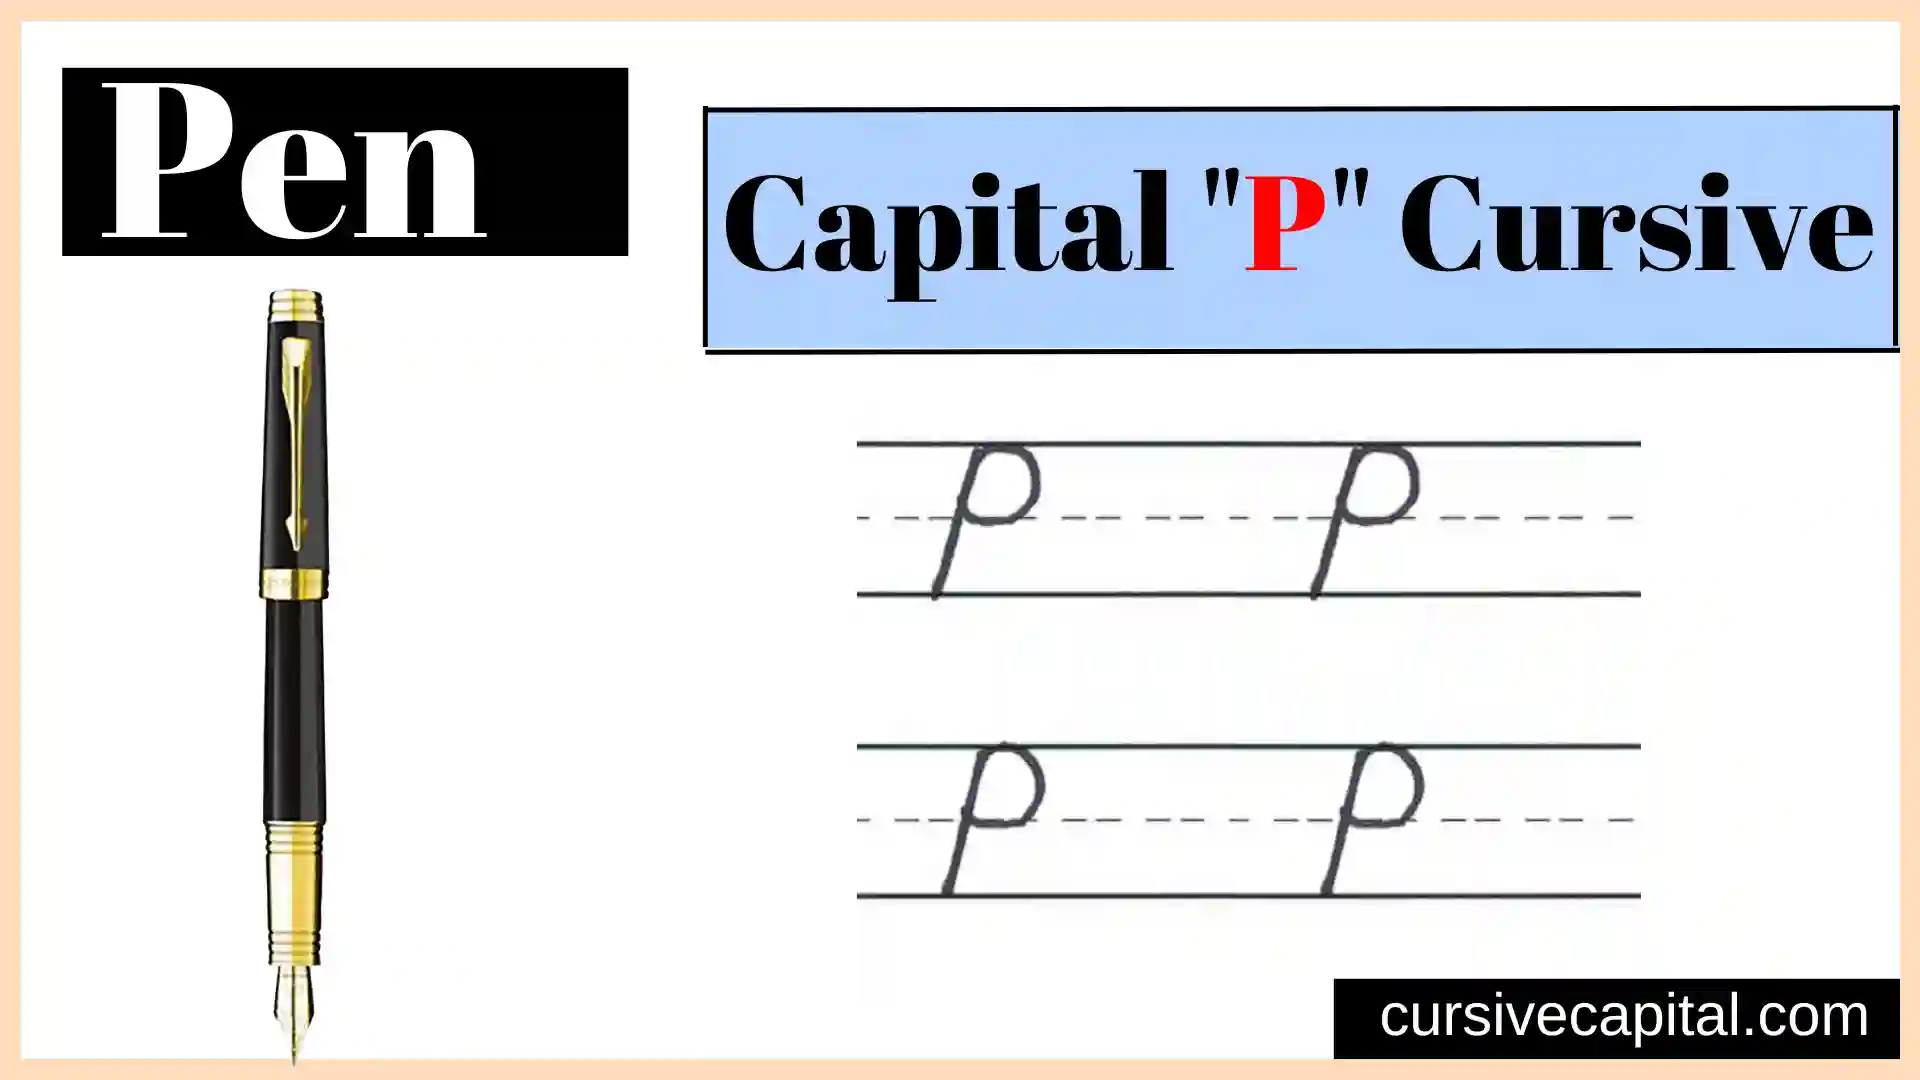 Capital P cursive